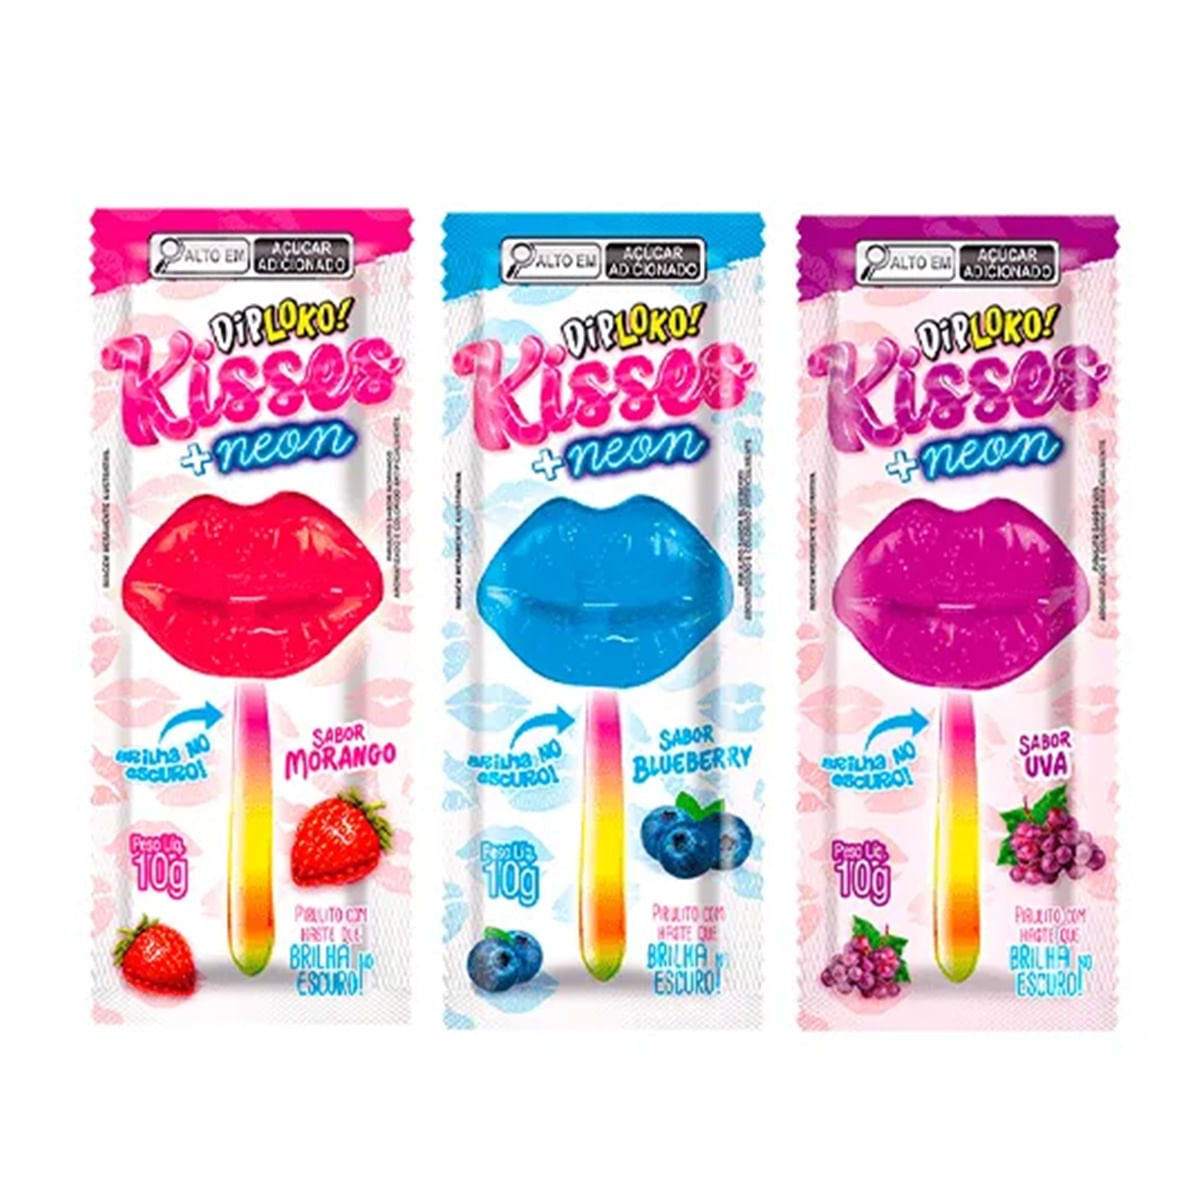 Dip Loko Kisses + Neon Pirulito com Haste que Brilha no Escuro 10g Danilla